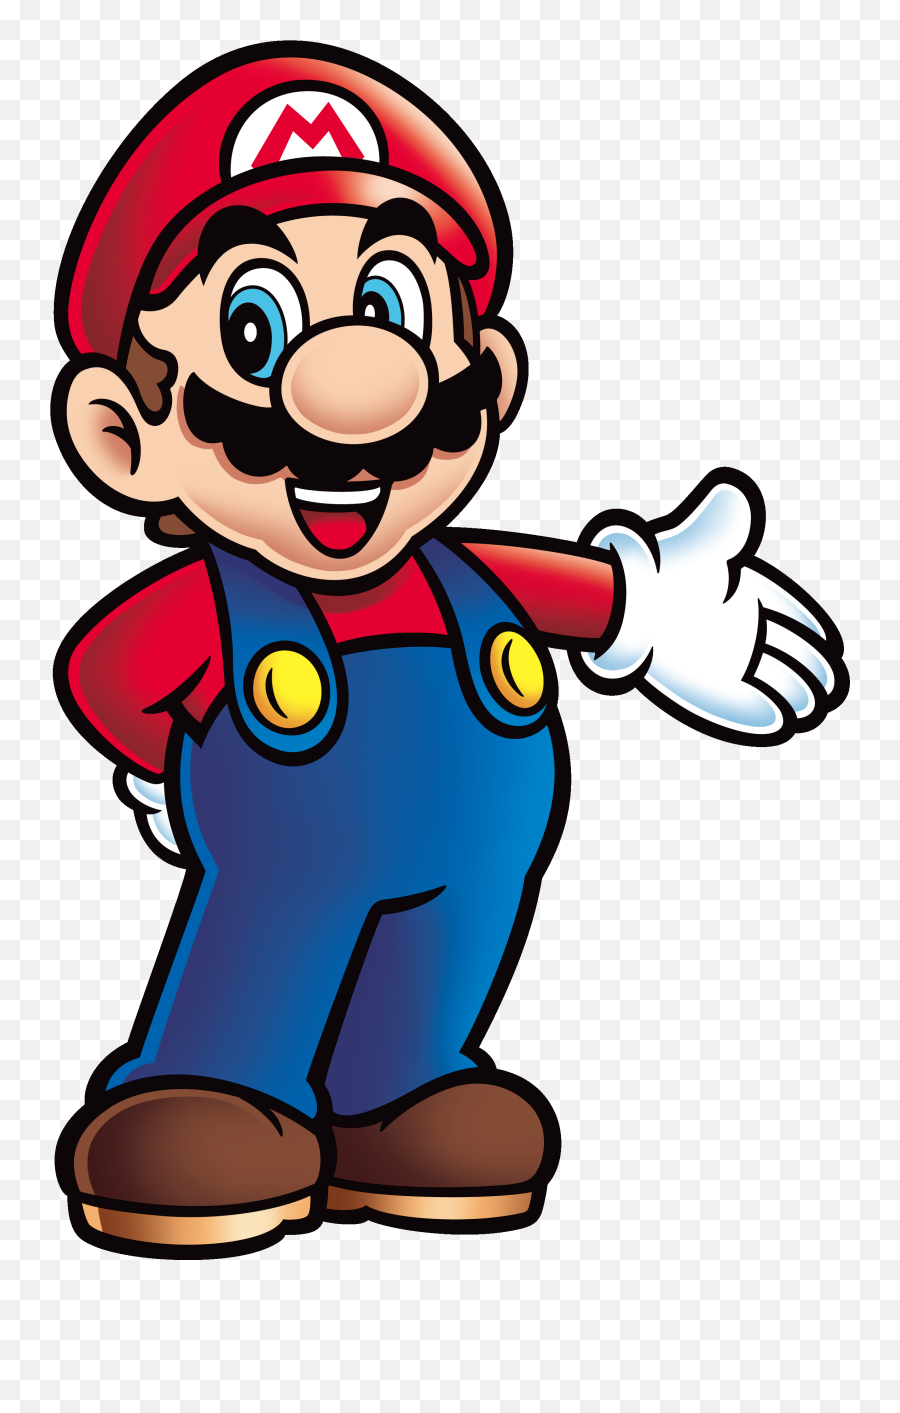 Clipart Of Mario And Tommy - Mario Series Emoji,Super Mario Find The Emoji